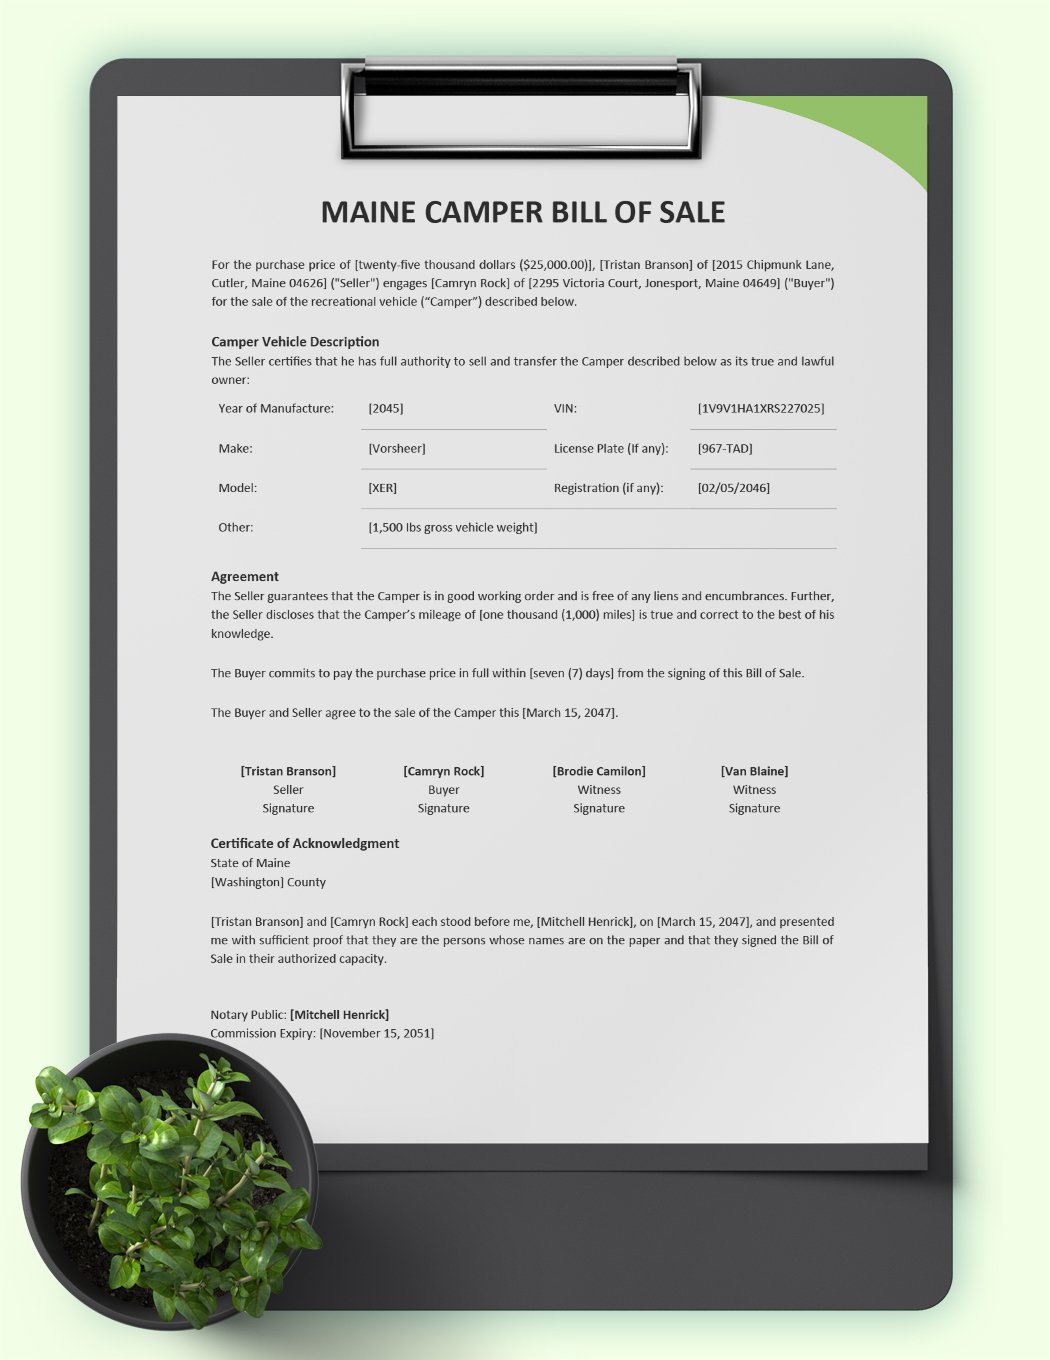 Maine Camper Bill of Sale Template